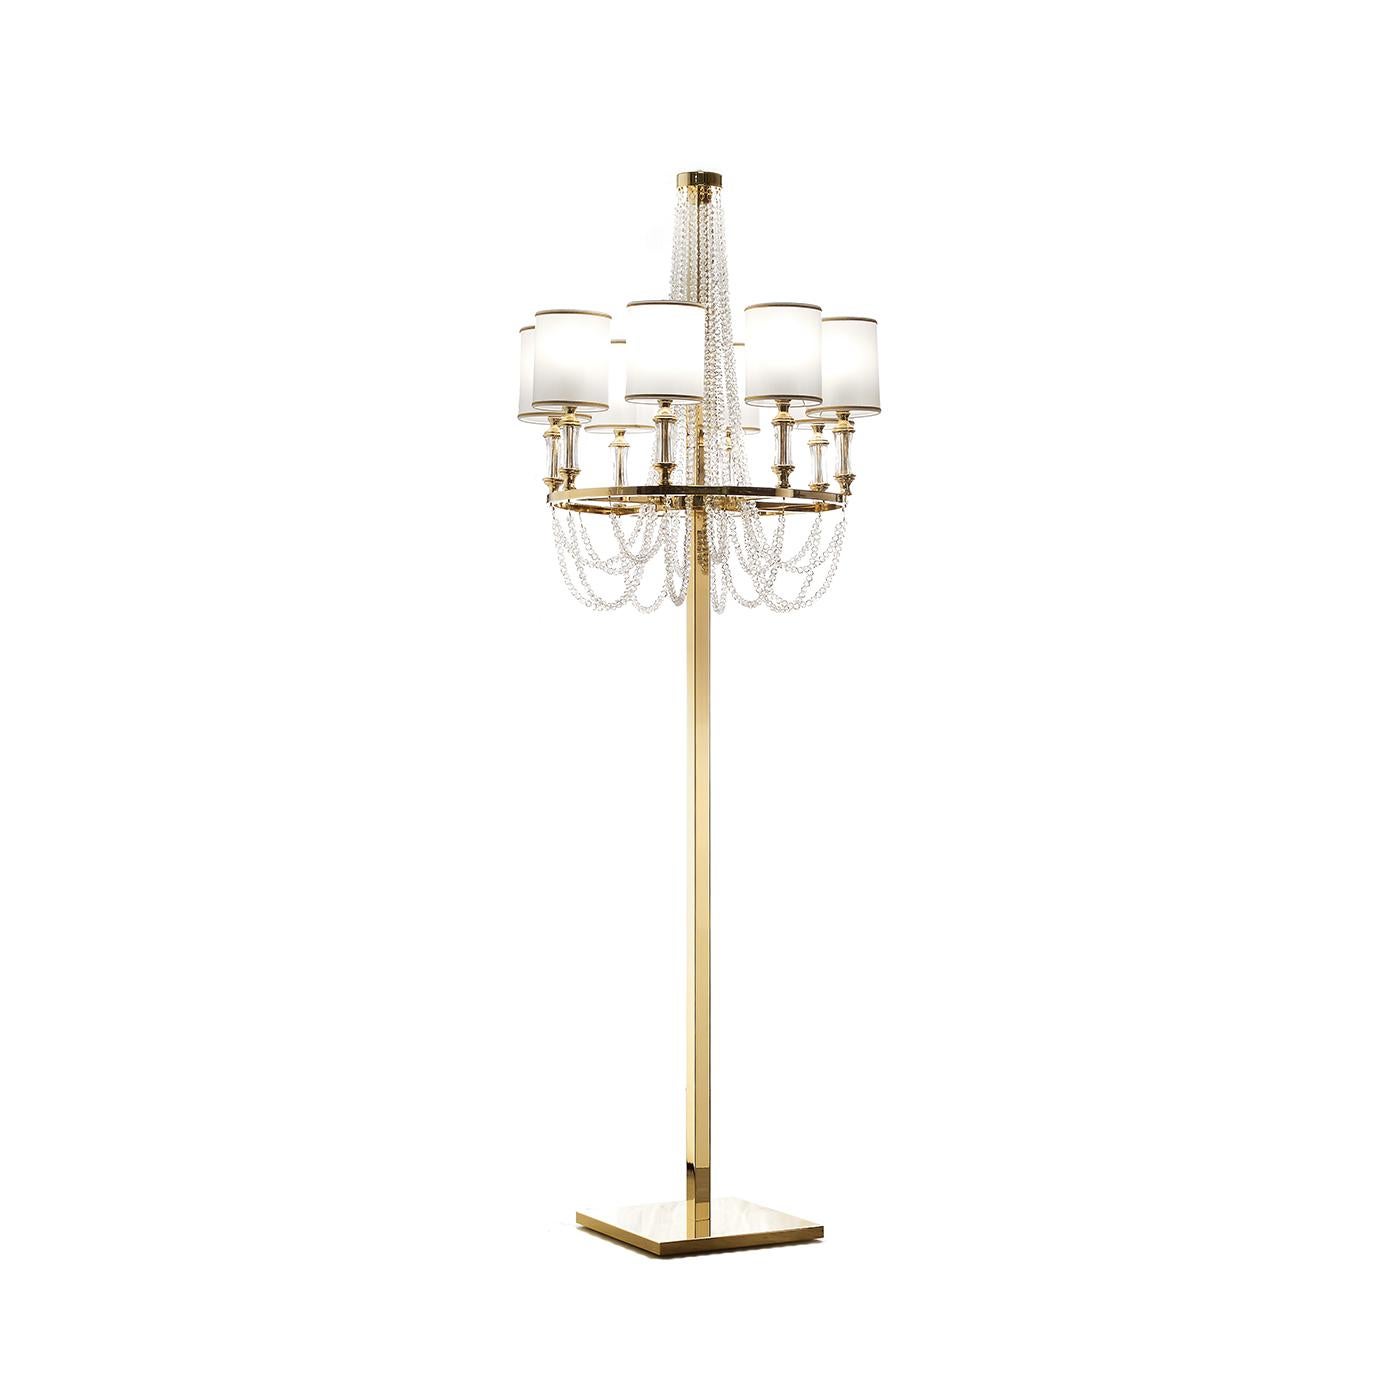 Diese bezaubernde Stehlampe verbindet Art-Déco-Design und romantischen Charme zu einem charmanten Gesamteffekt, der in einem klassisch eingerichteten Haus einen besonderen Akzent setzt. Die Struktur ist handgefertigt aus Metall mit einer polierten